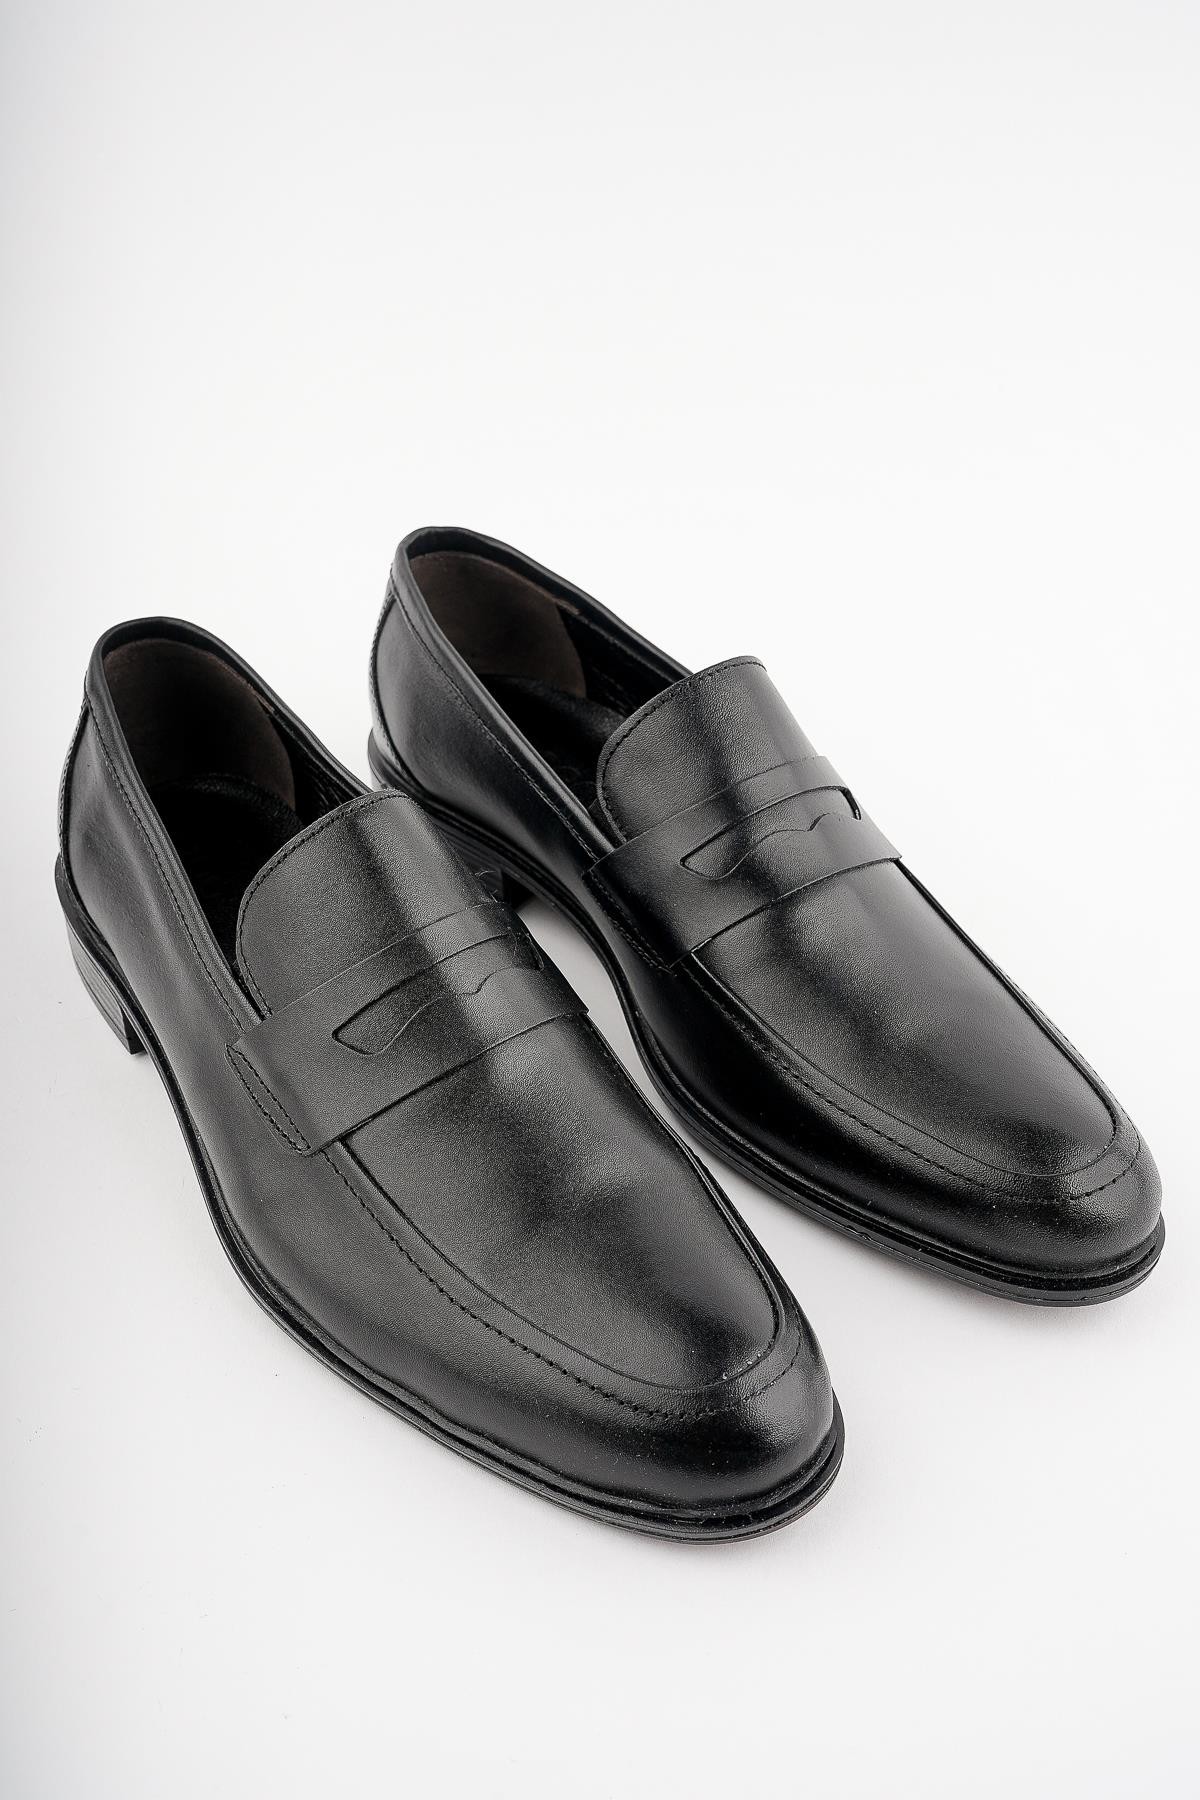 Muggo H0140 Garantili Erkek Günlük Klasik Hakiki Deri Ayakkabı